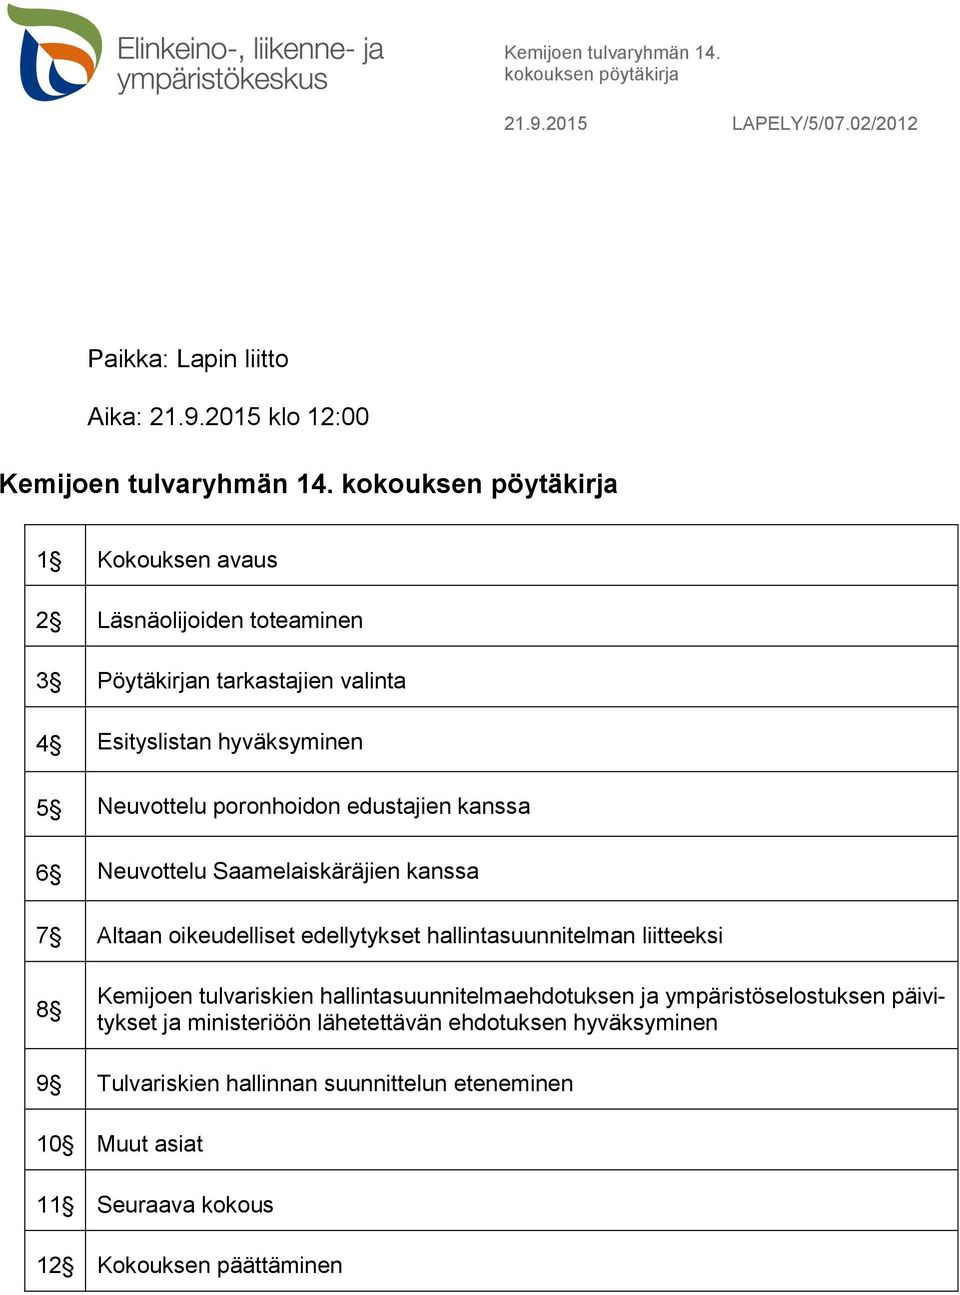 kanssa 6 Neuvottelu Saamelaiskäräjien kanssa 7 Altaan oikeudelliset edellytykset hallintasuunnitelman liitteeksi 8 Kemijoen tulvariskien hallintasuunnitelmaehdotuksen